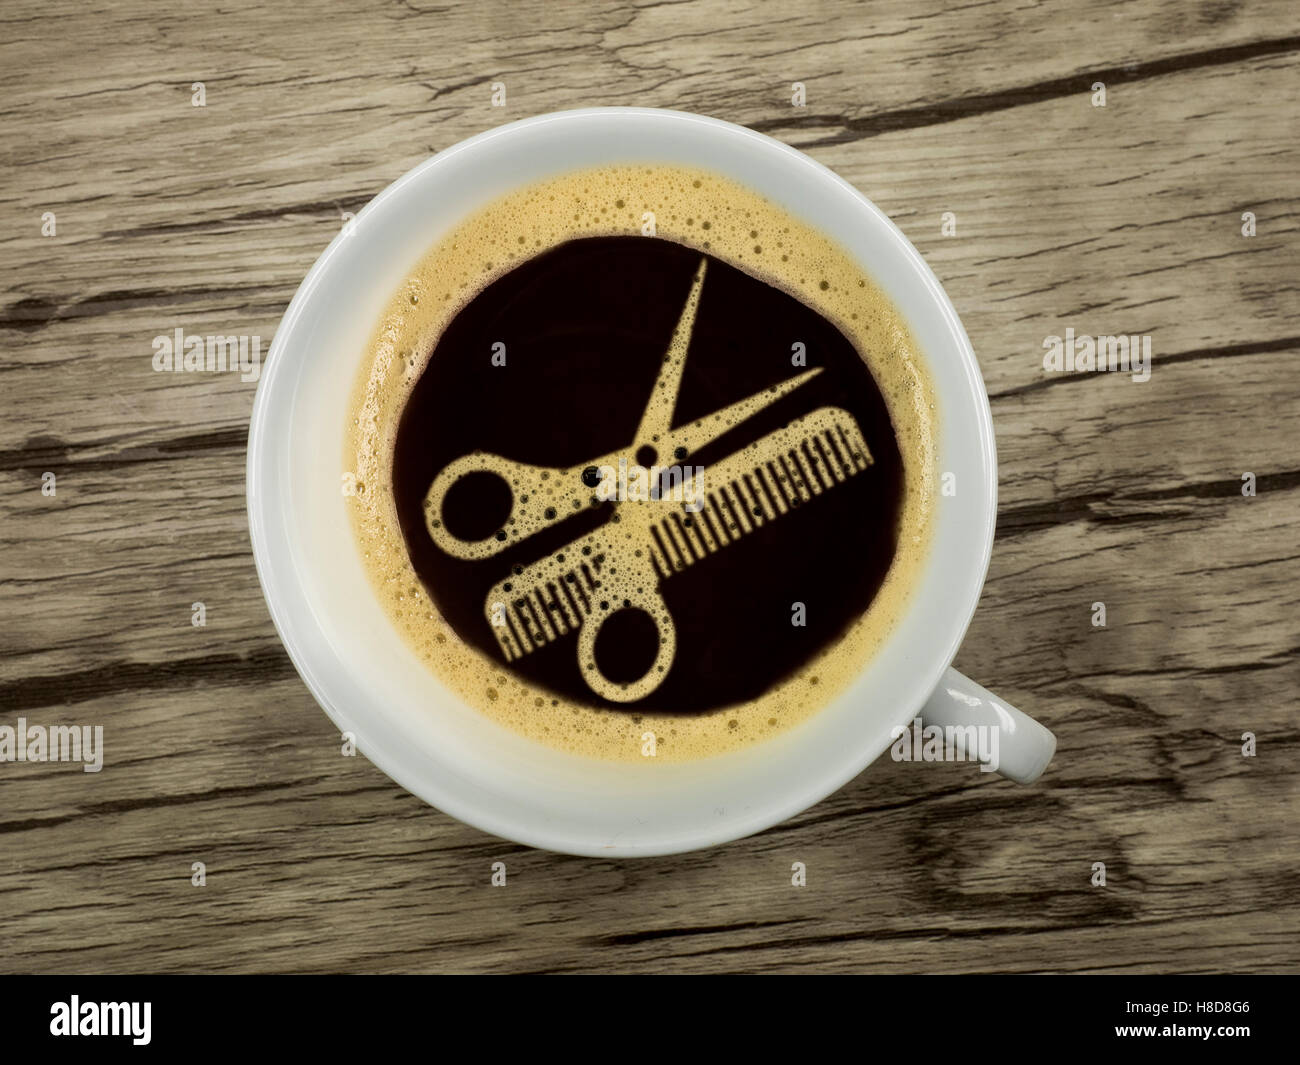 Kaffee beim Friseur - extra Service für die Wartezeit Stockfoto